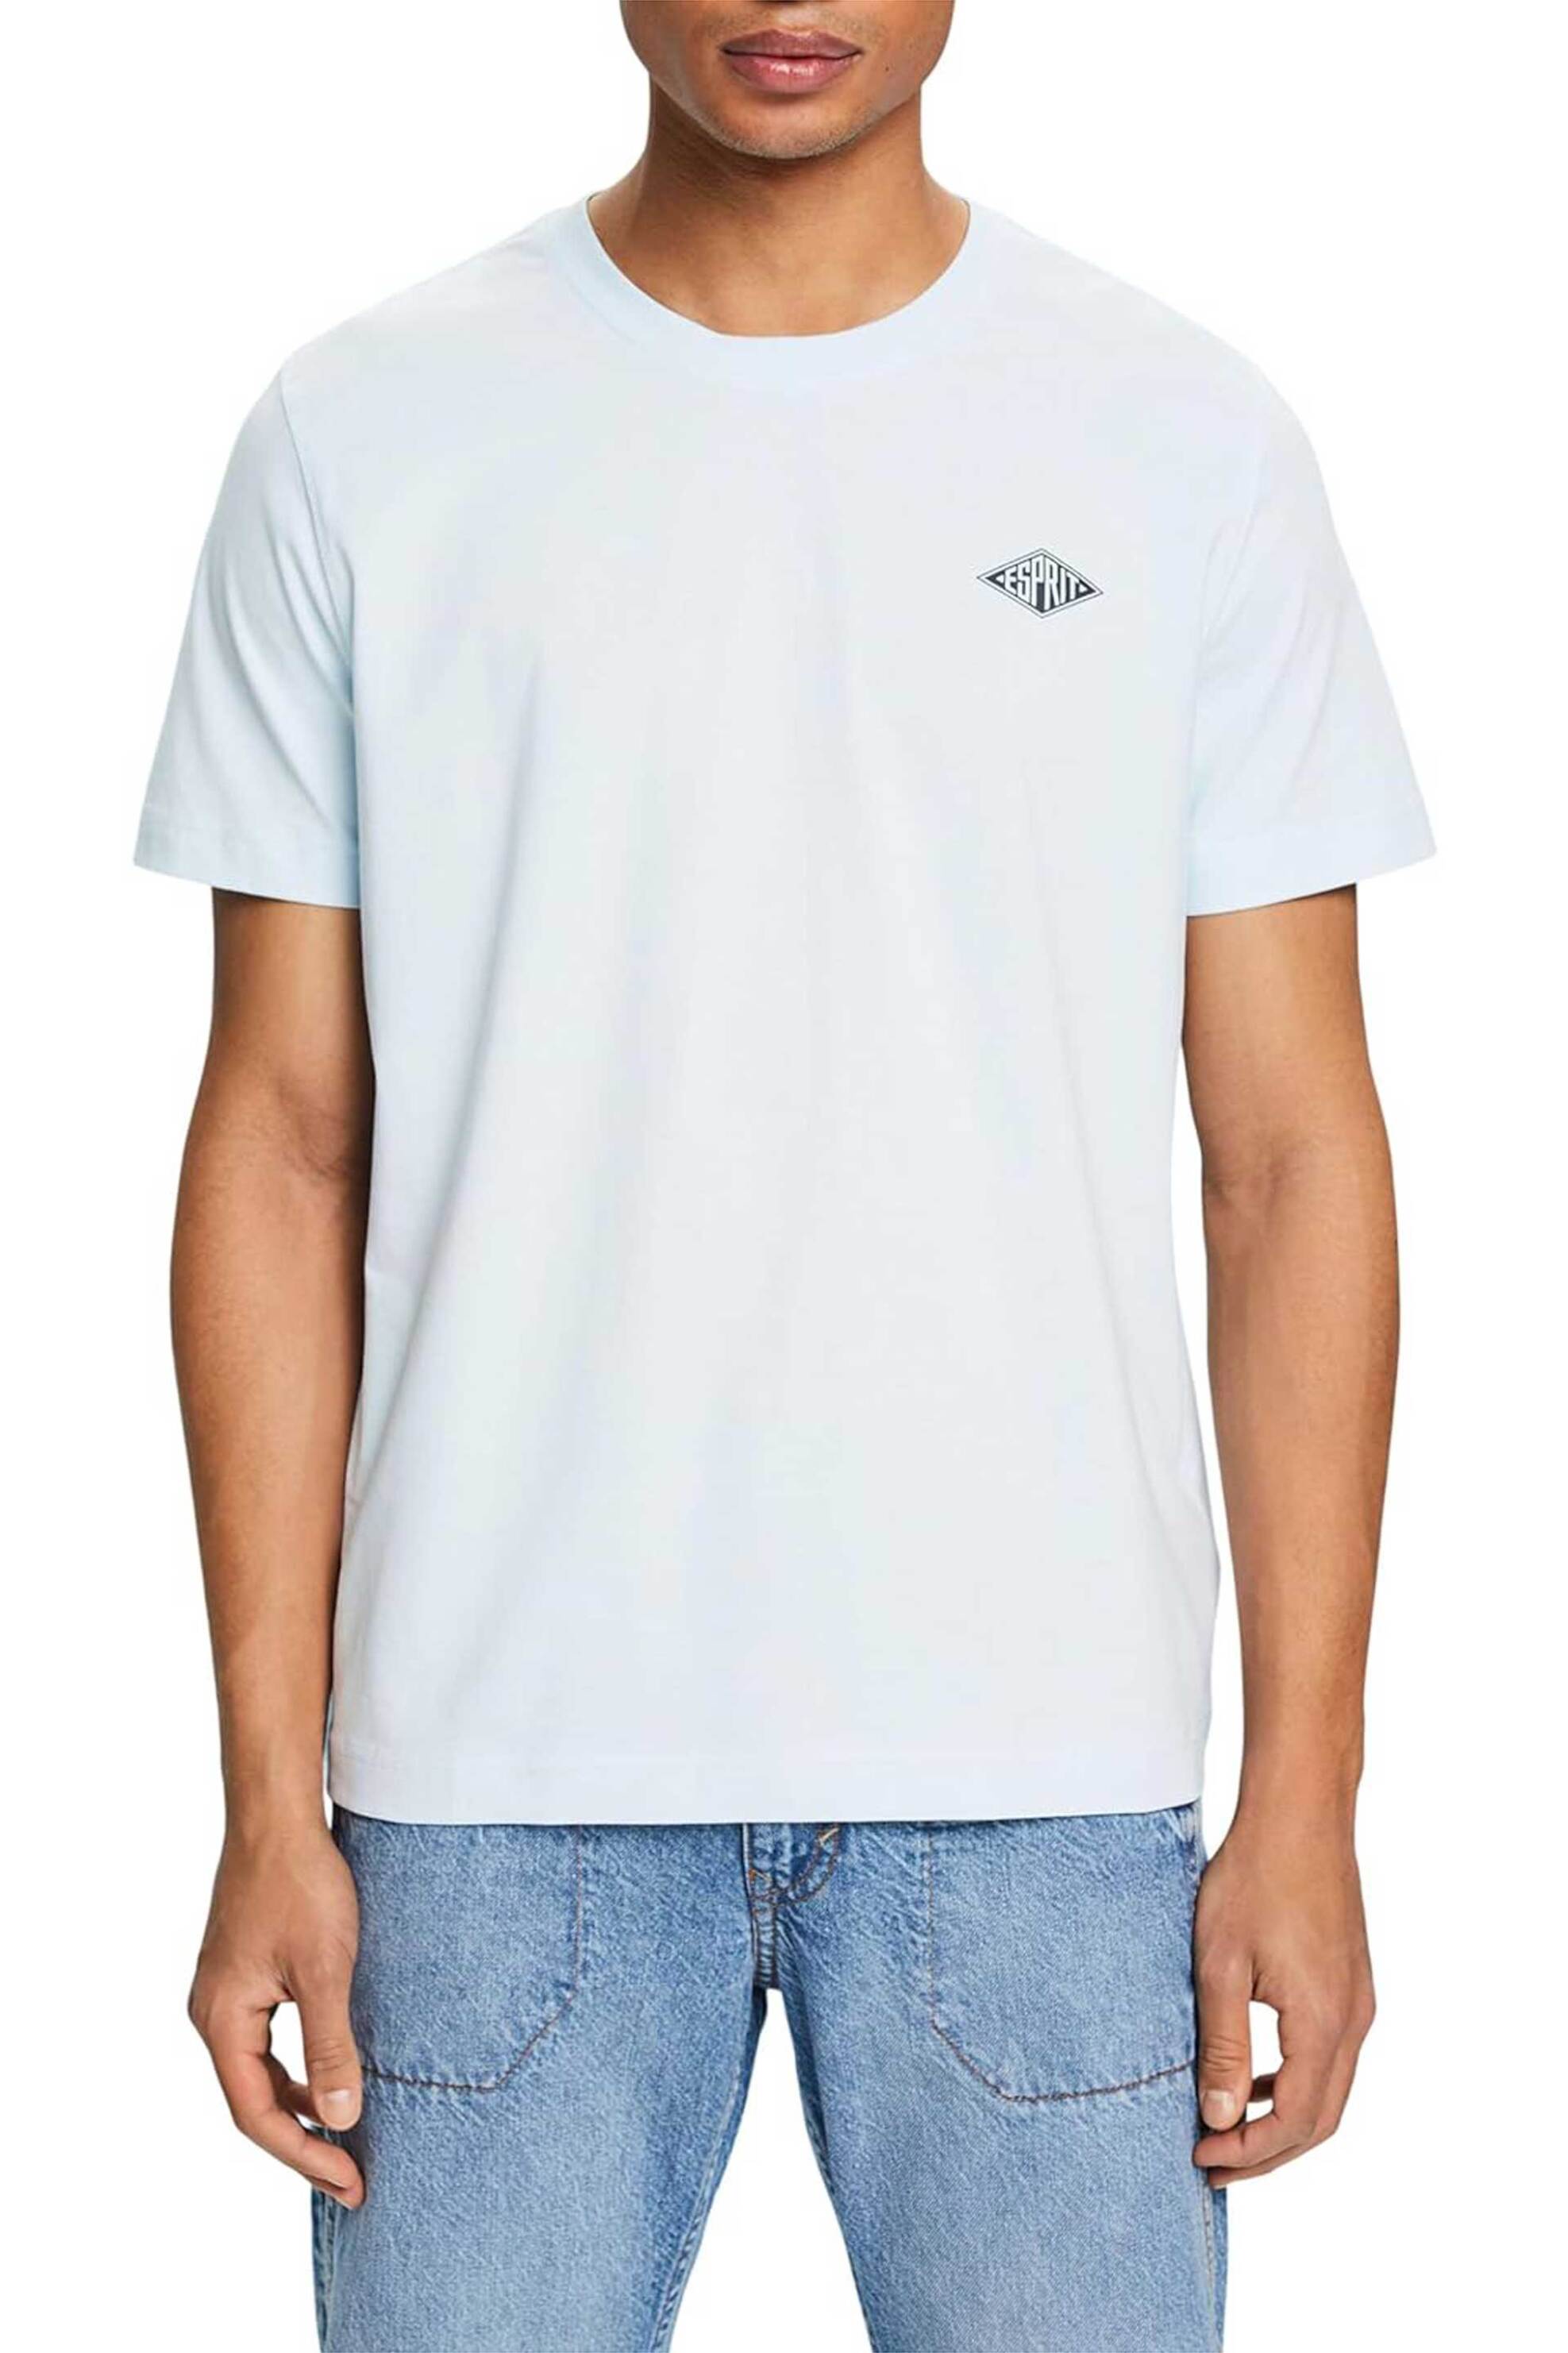 Ανδρική Μόδα > Ανδρικά Ρούχα > Ανδρικές Μπλούζες > Ανδρικά T-Shirts Esprit ανδρικό T-shirt με logo print Regular Fit - 014EE2K302 Γαλάζιο